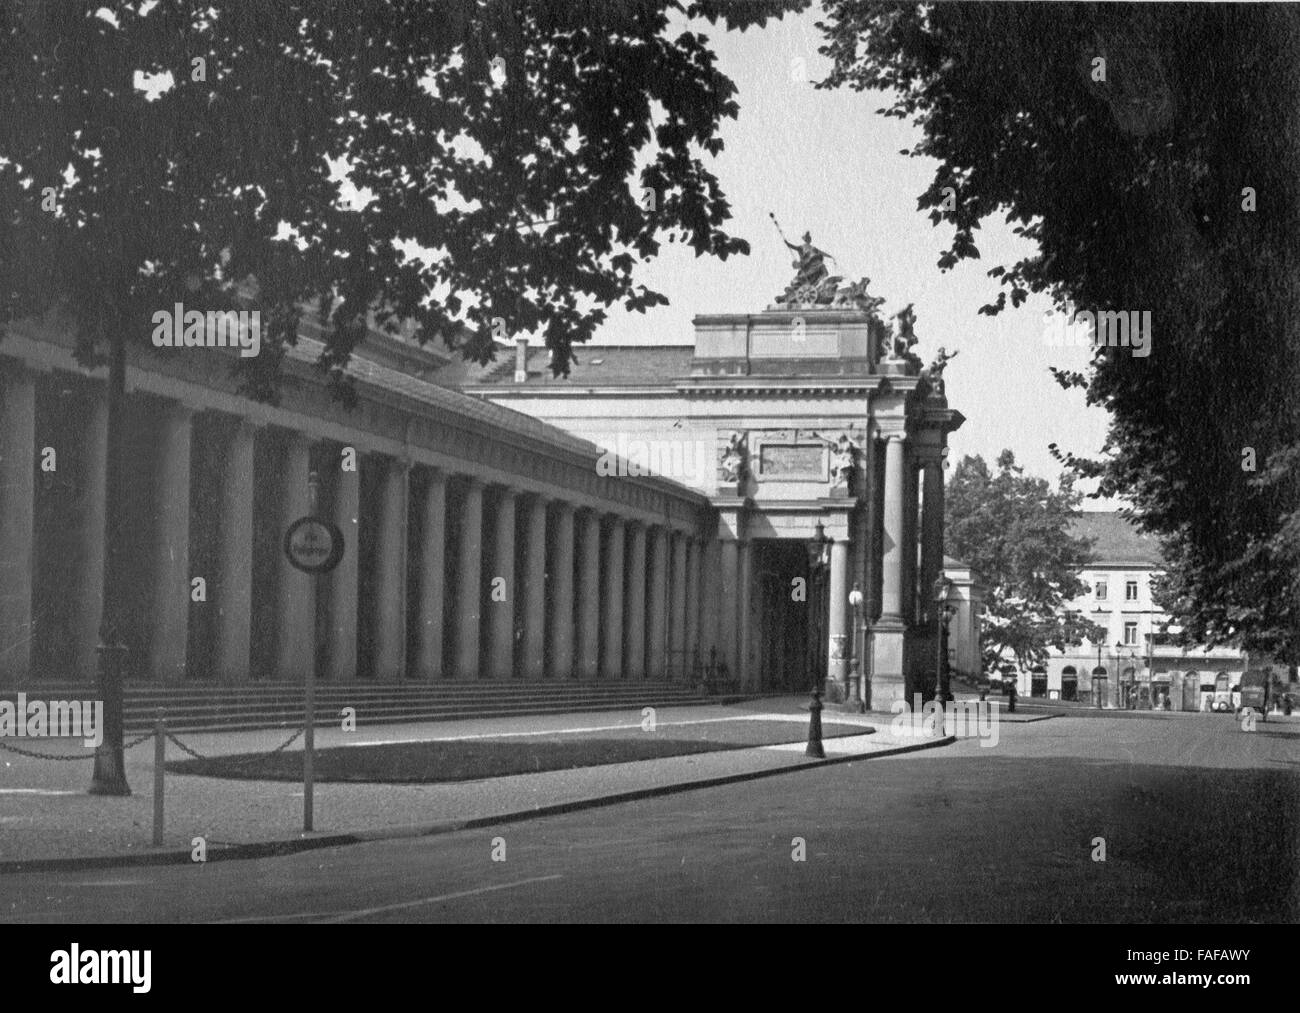 kolonnaden im Kurbad Wiesbaden, Deutschland 1930er Jahre. Colonnades at spa resort Wiesbaden, Germany 1930s. Stock Photo